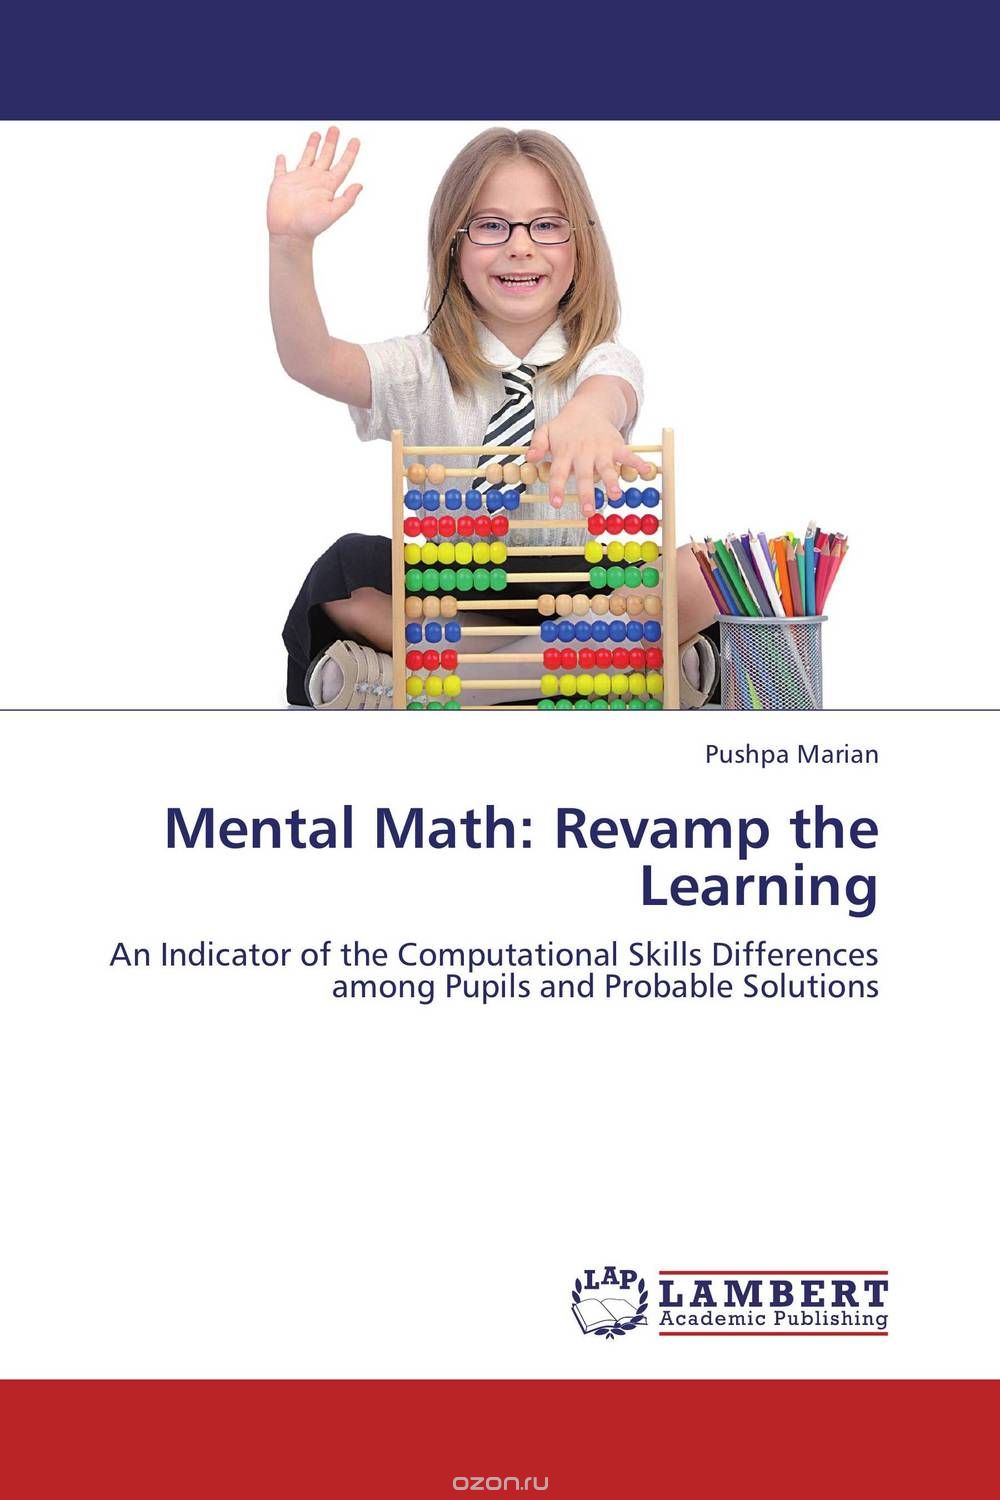 Скачать книгу "Mental Math: Revamp the Learning"